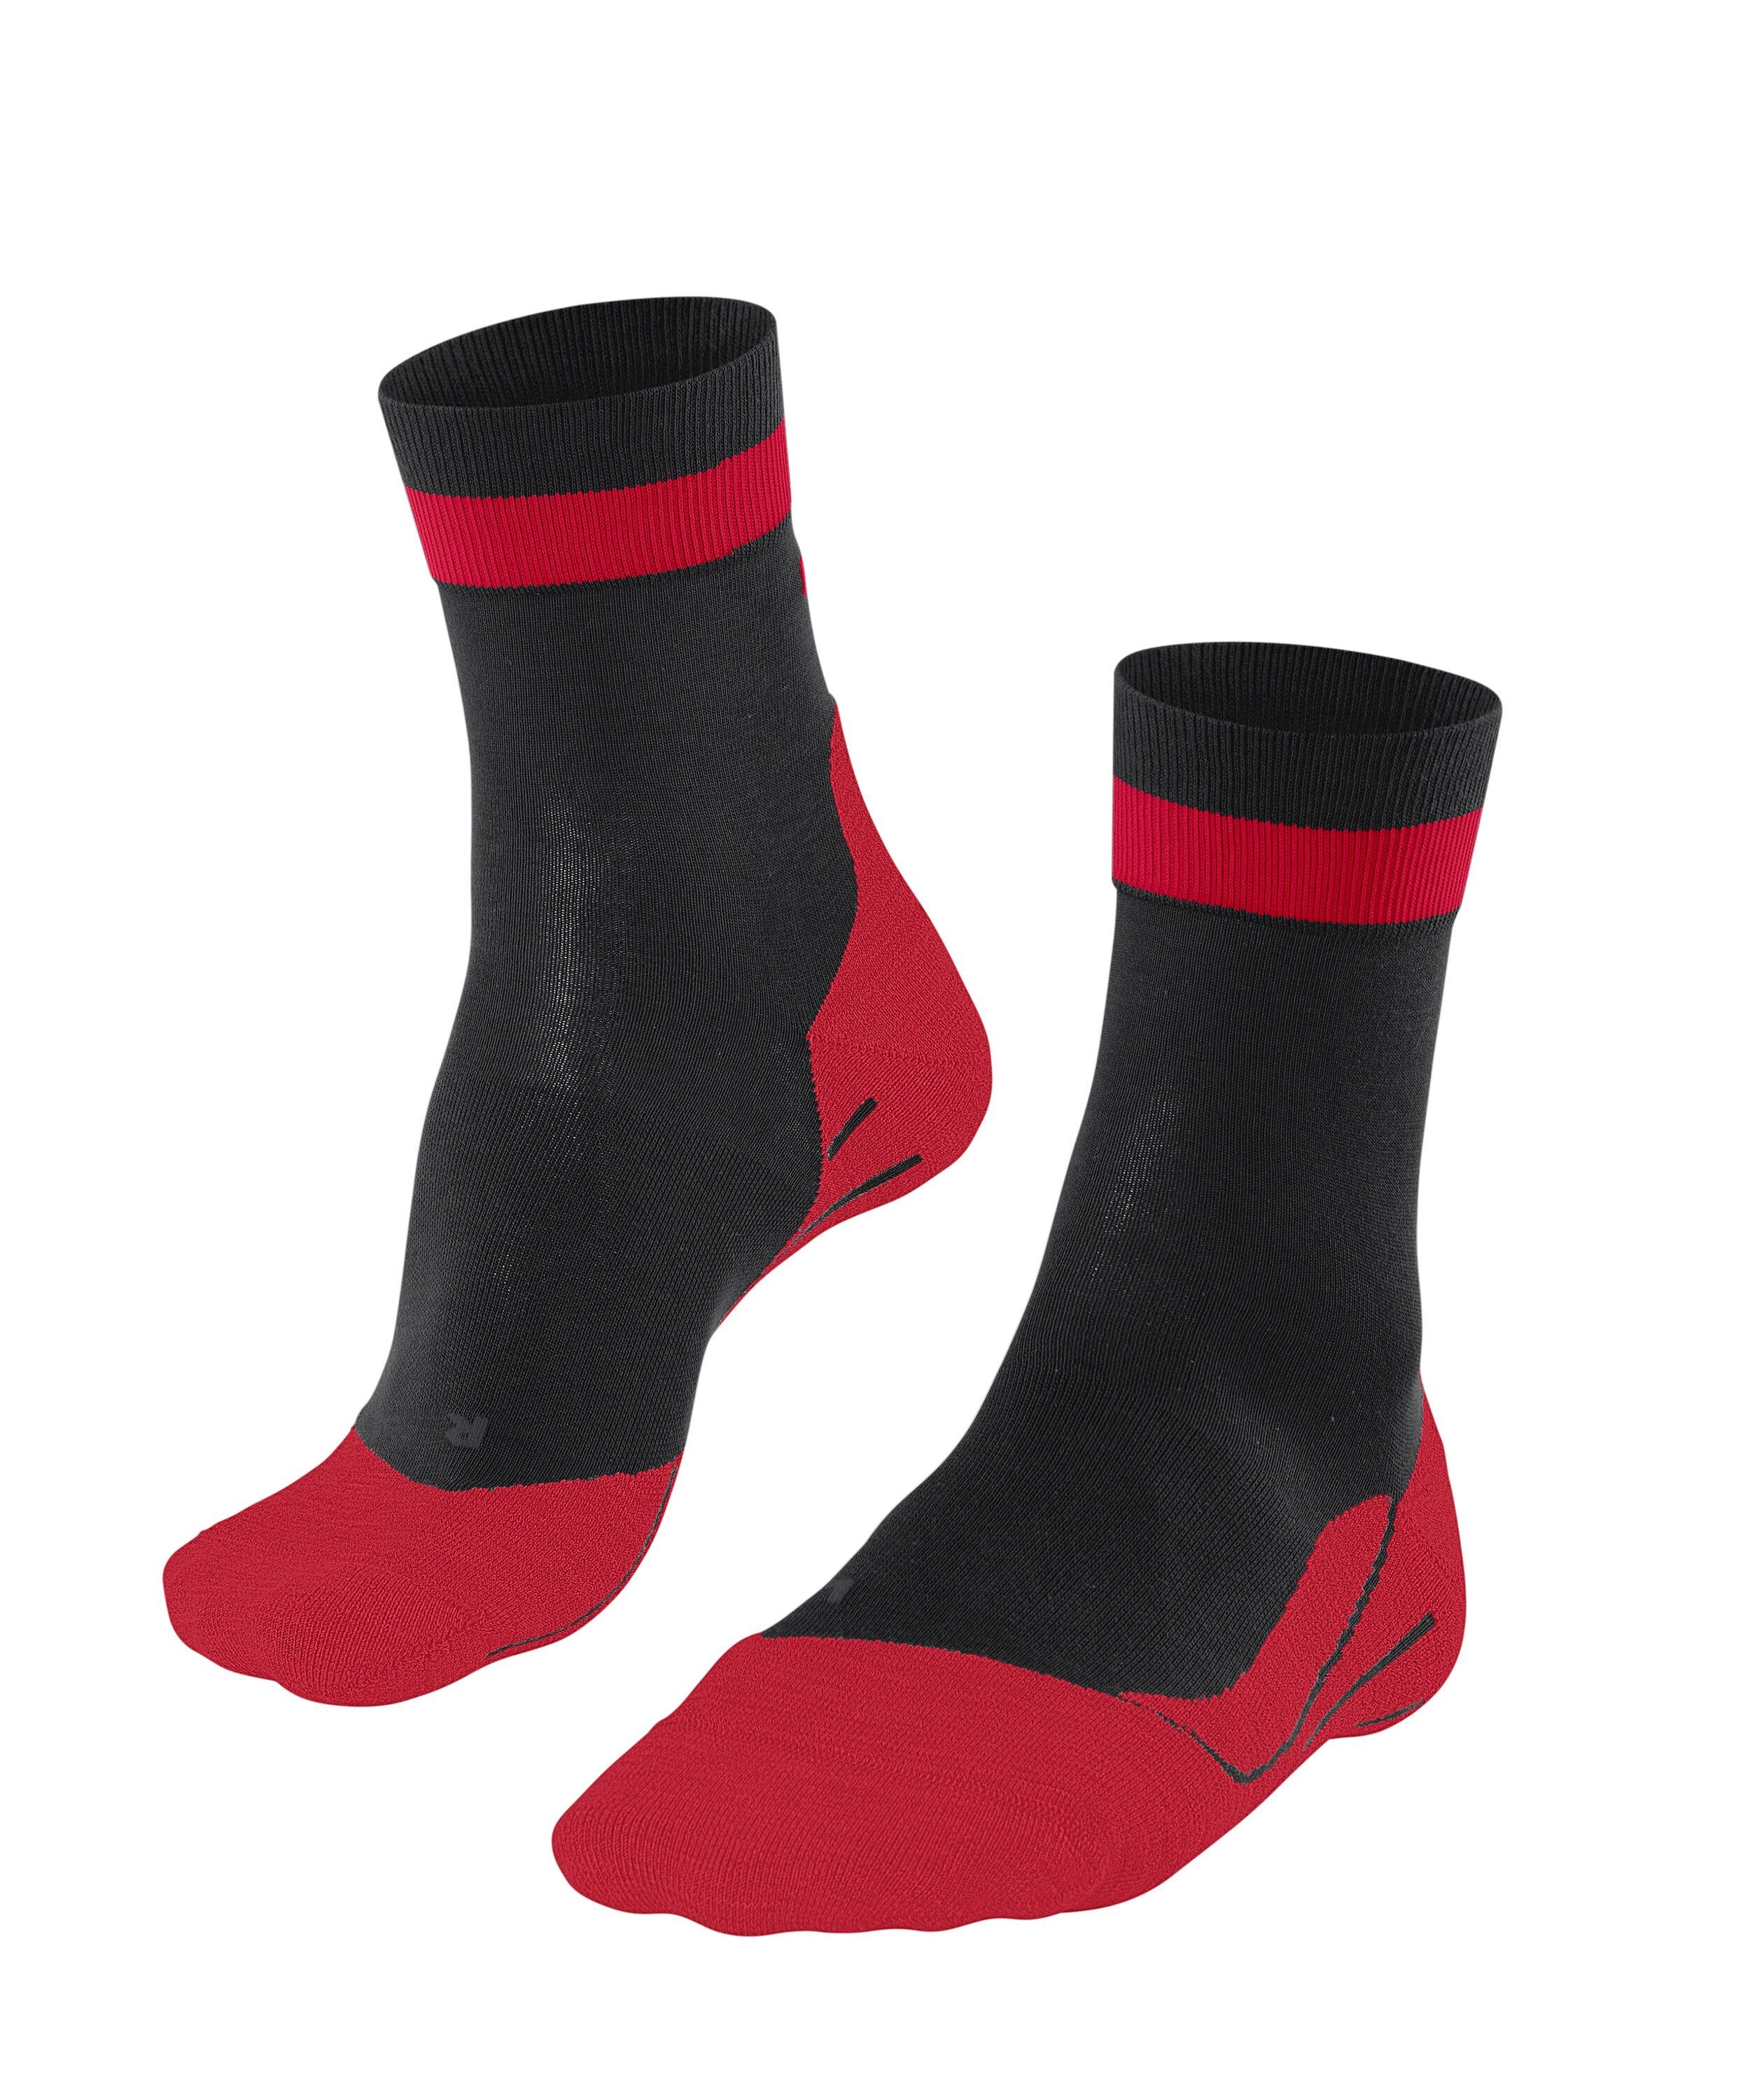 FALKE Laufsocken RU4 Endurance (1-Paar) leichte Laufsocke mit mittlerer Polsterung thunder (3088) | Socken